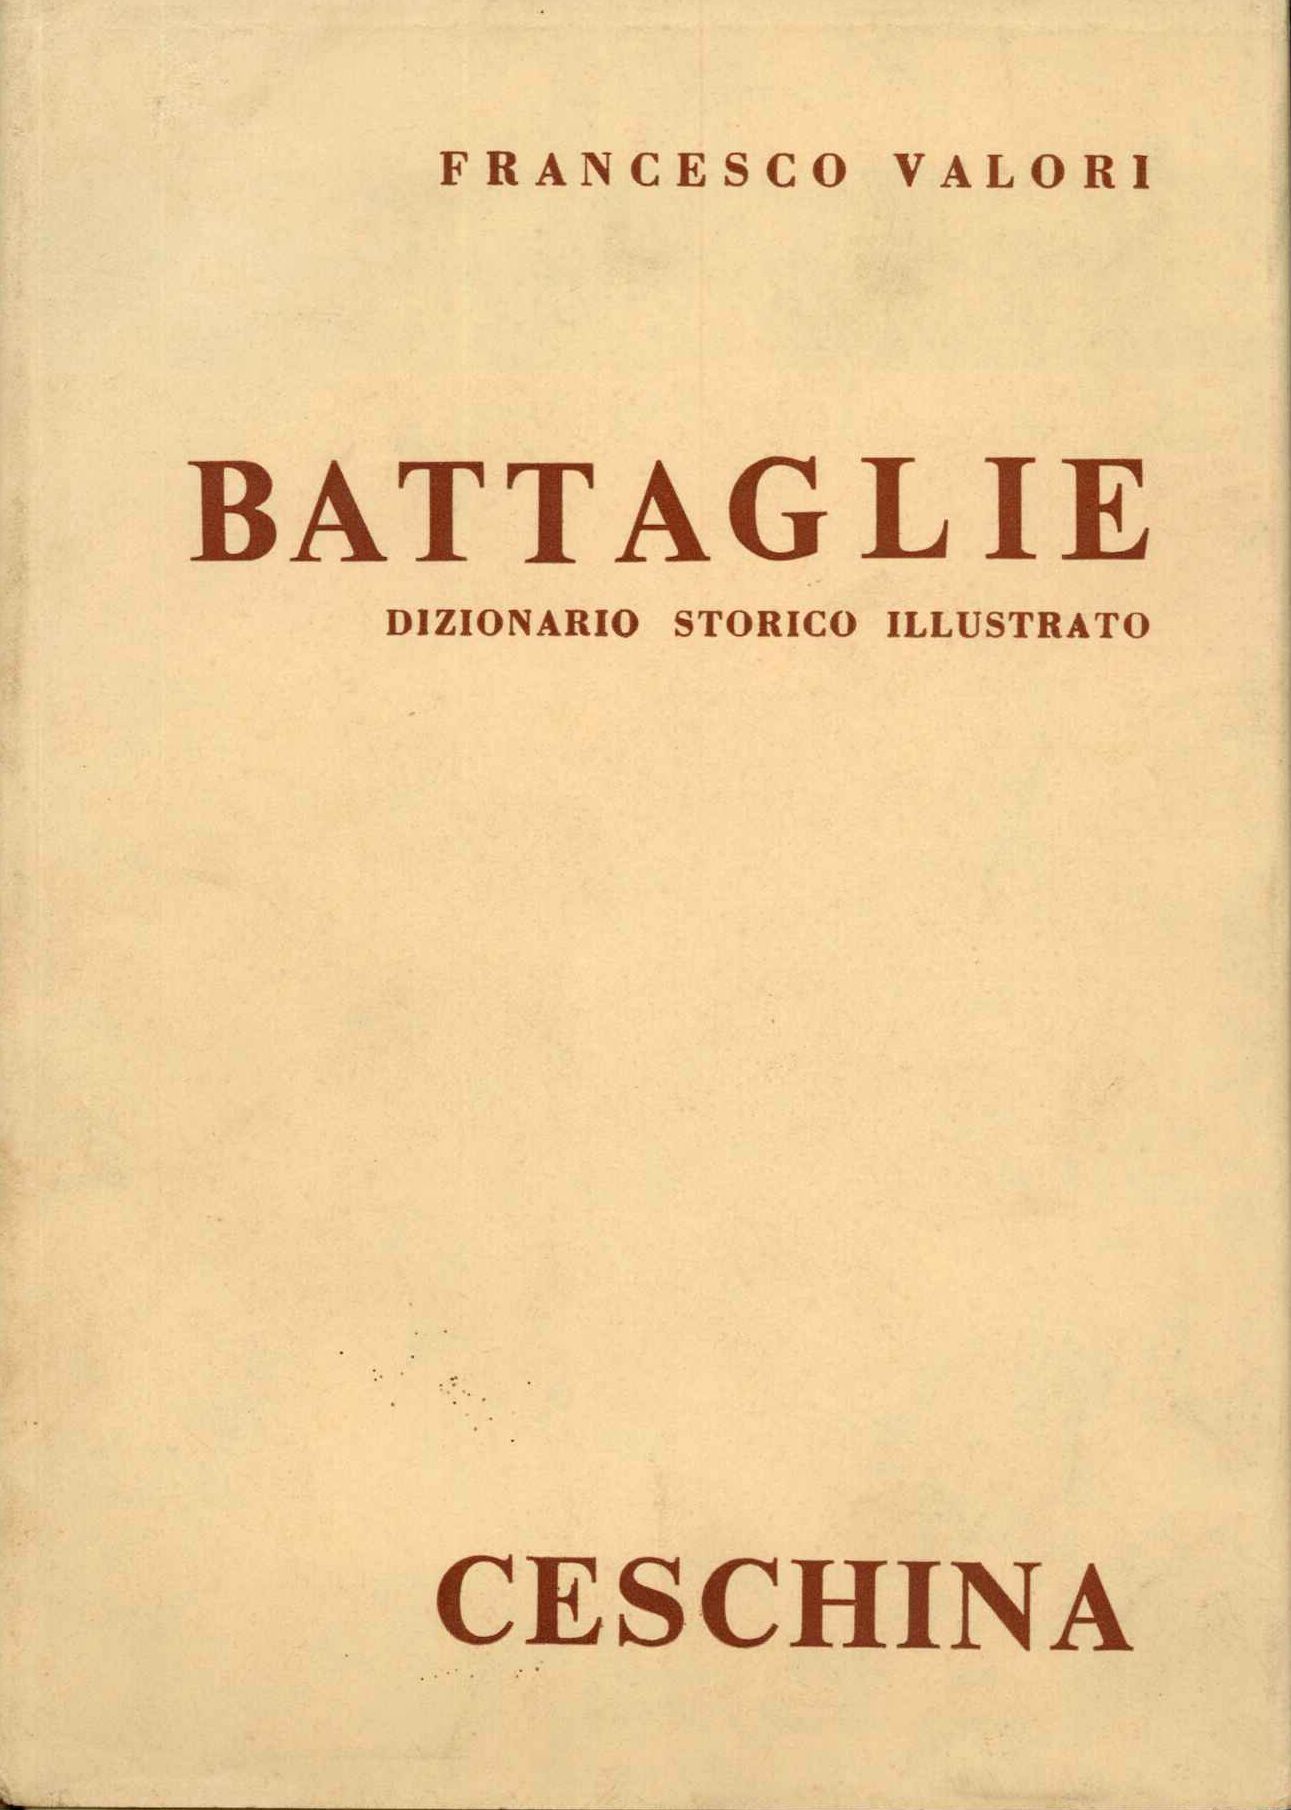 Battaglie - dizionario storico illustrato